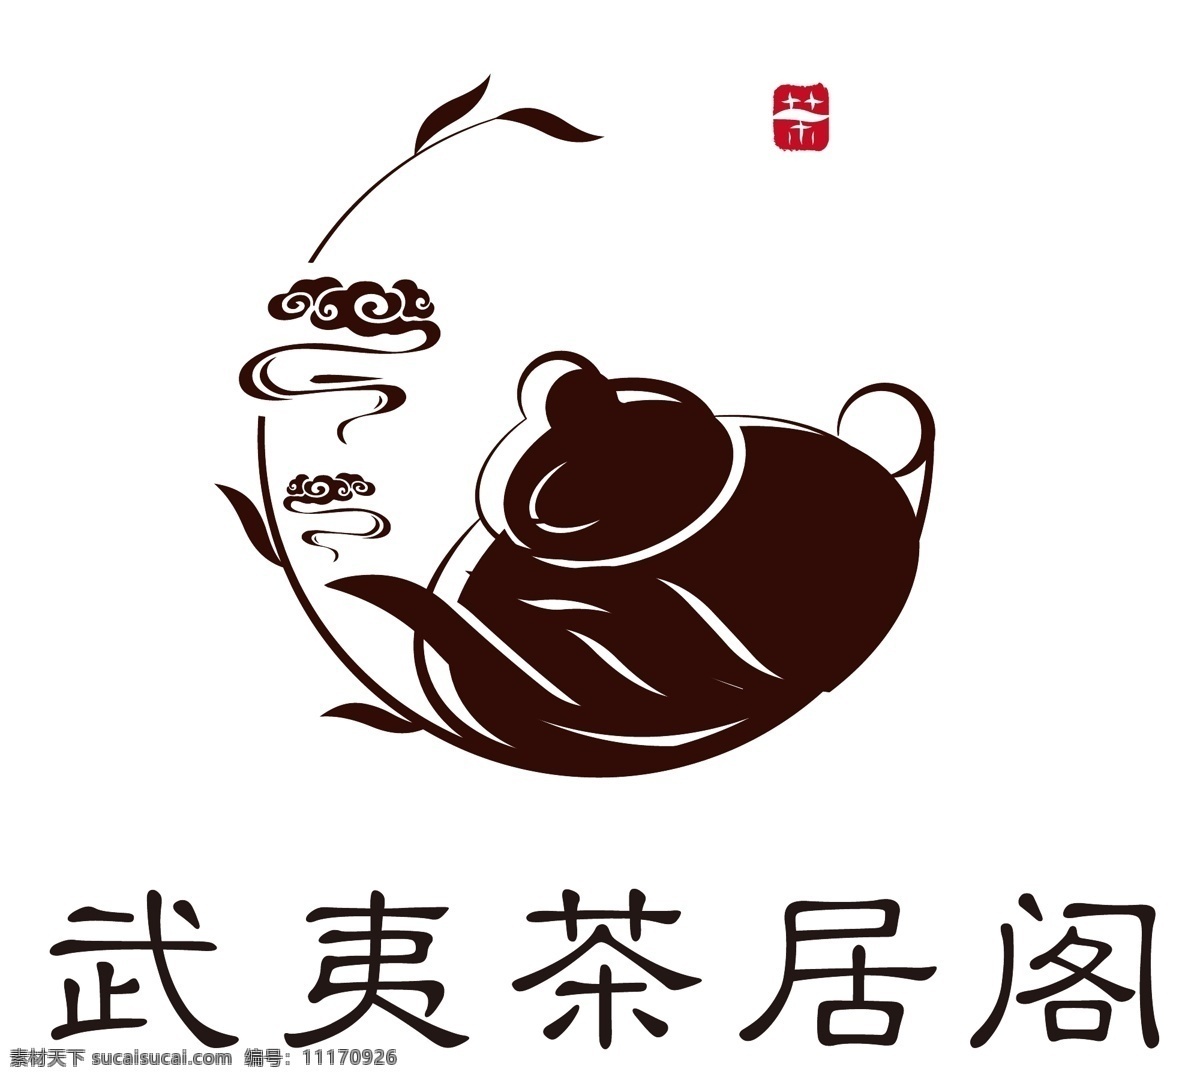 茶叶商标设计 茶叶 茶壶 古风 商标设计 头像 祥云 茶道 高端 标志图标 企业 logo 标志